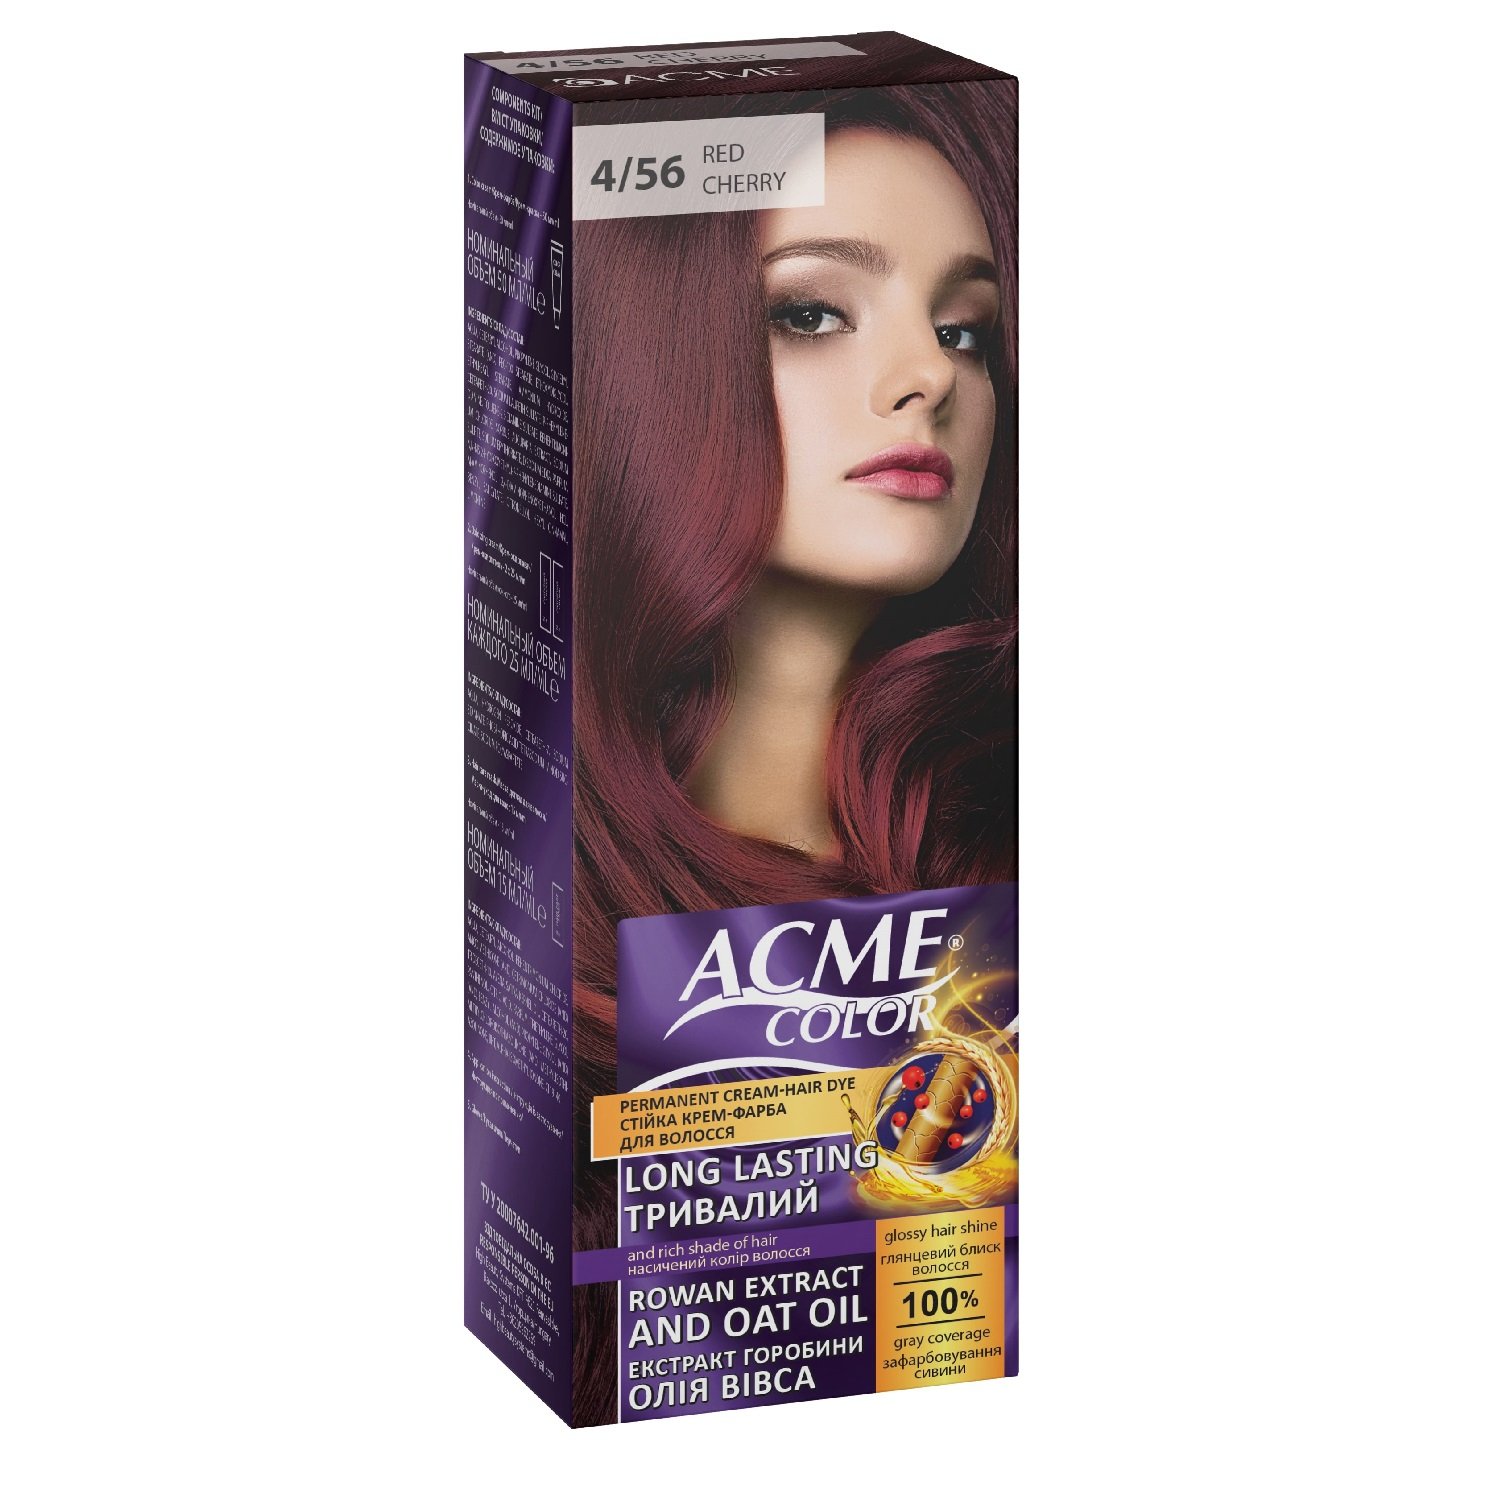 Крем-краска для волос Acme Color EXP, оттенок 4/56 (Вишнево-красный), 115 мл - фото 1